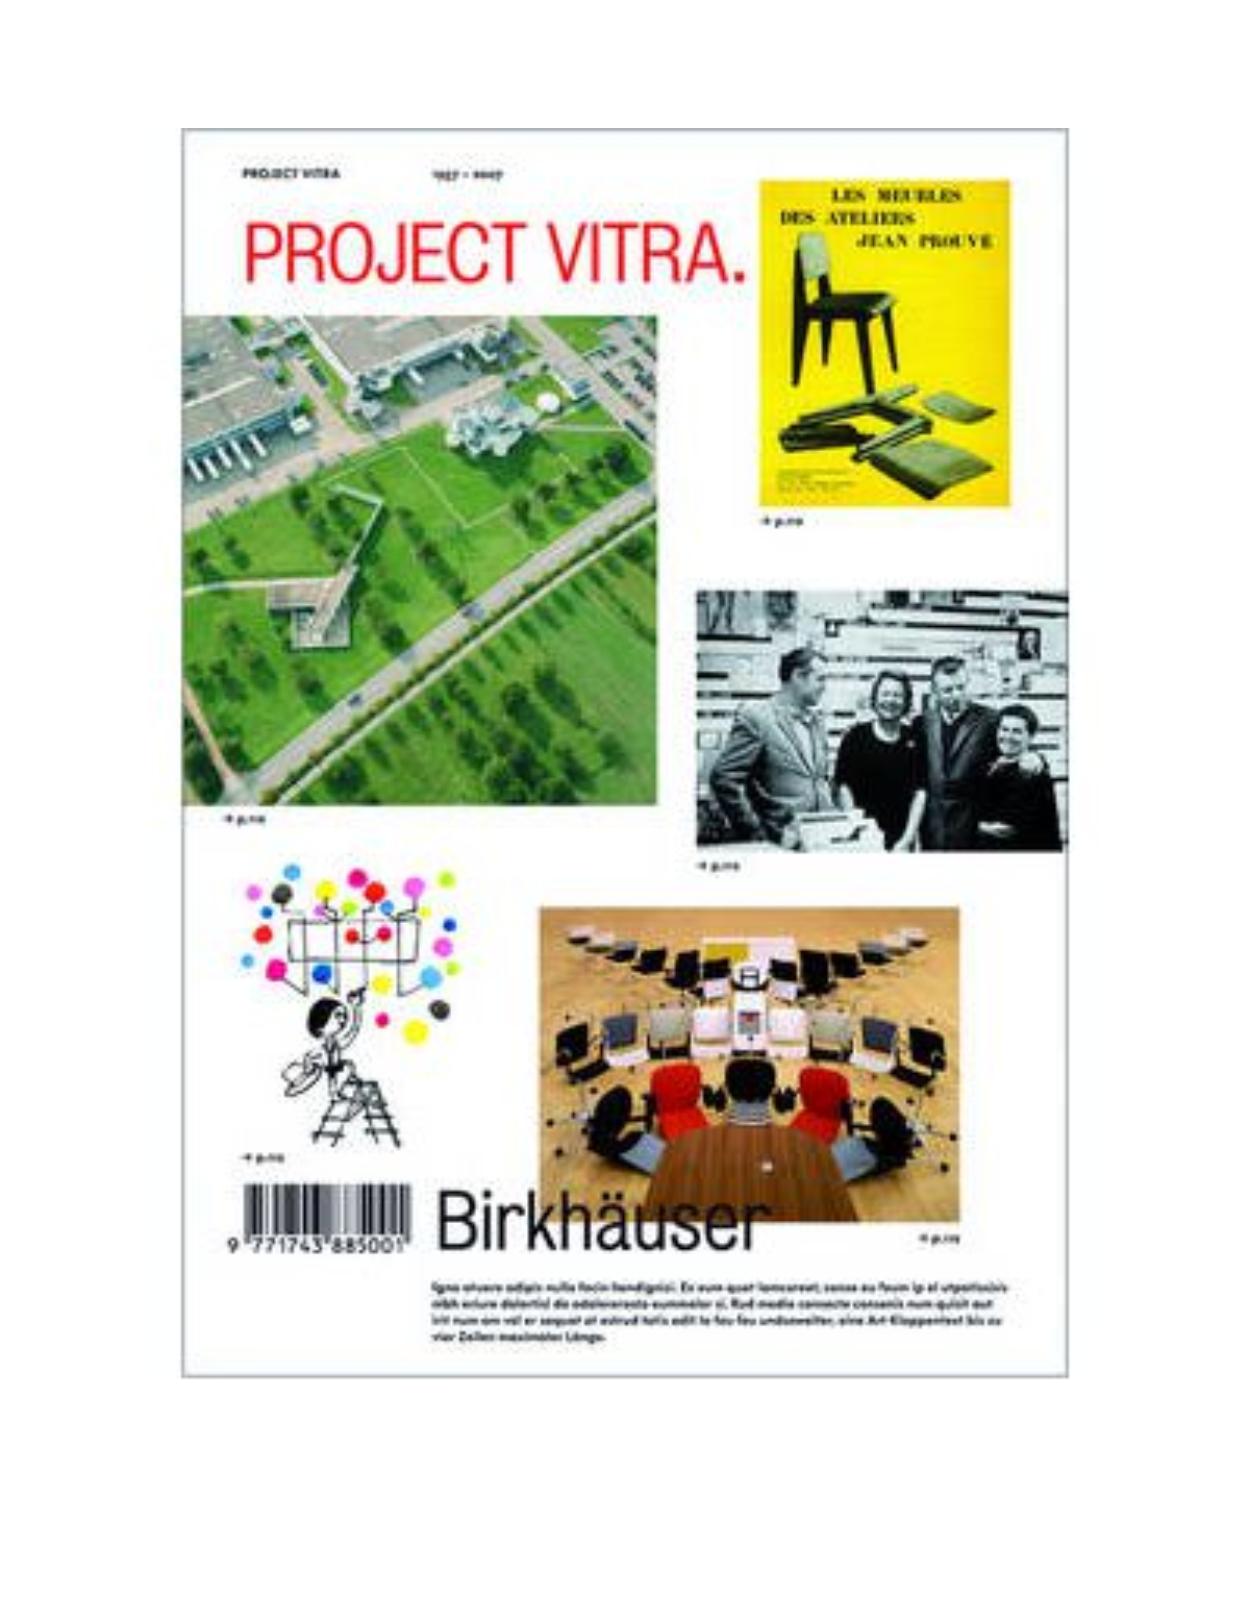 Project Vitra